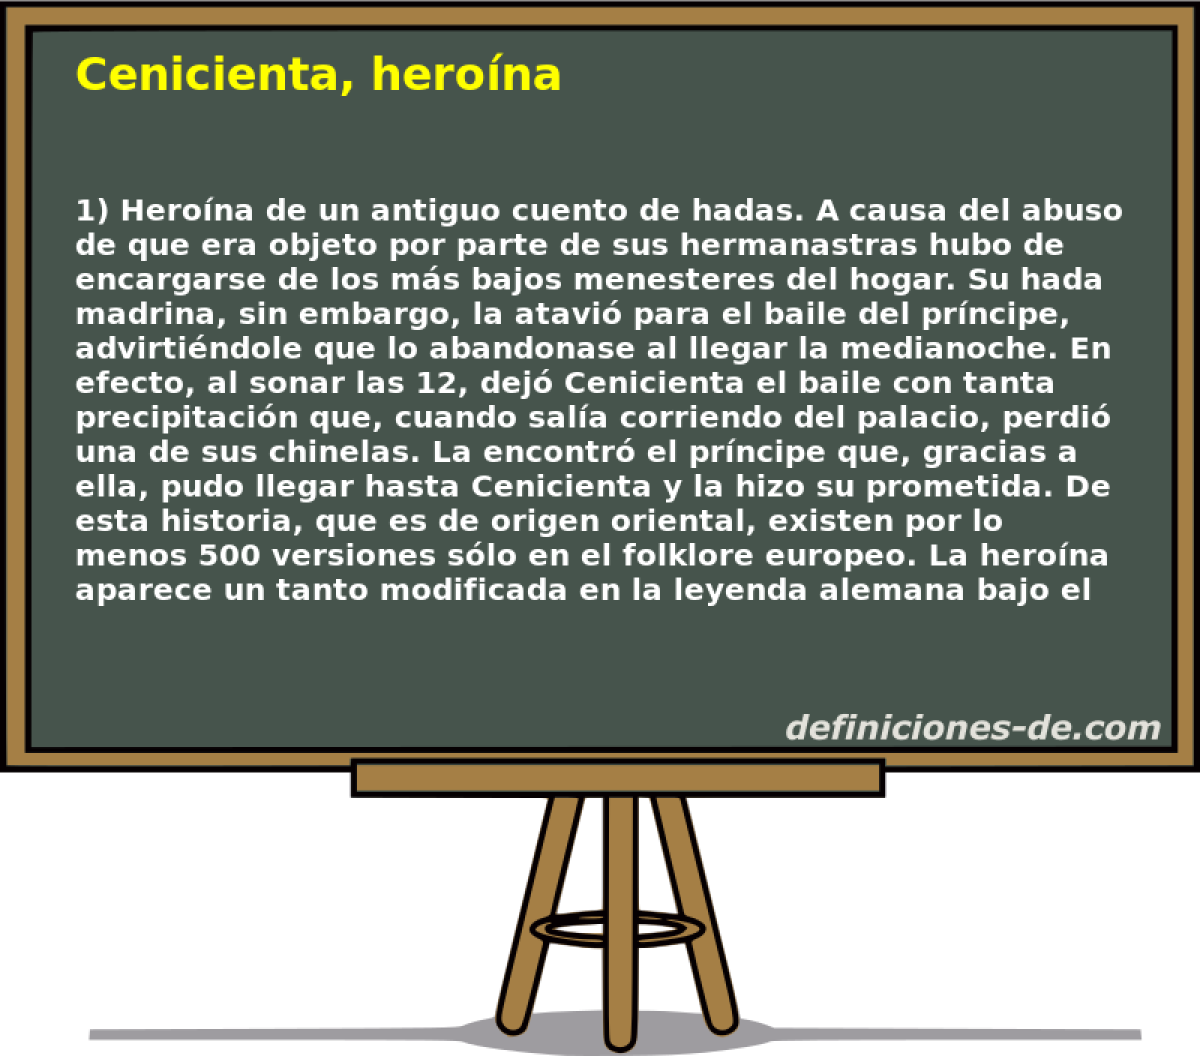 Cenicienta, herona 